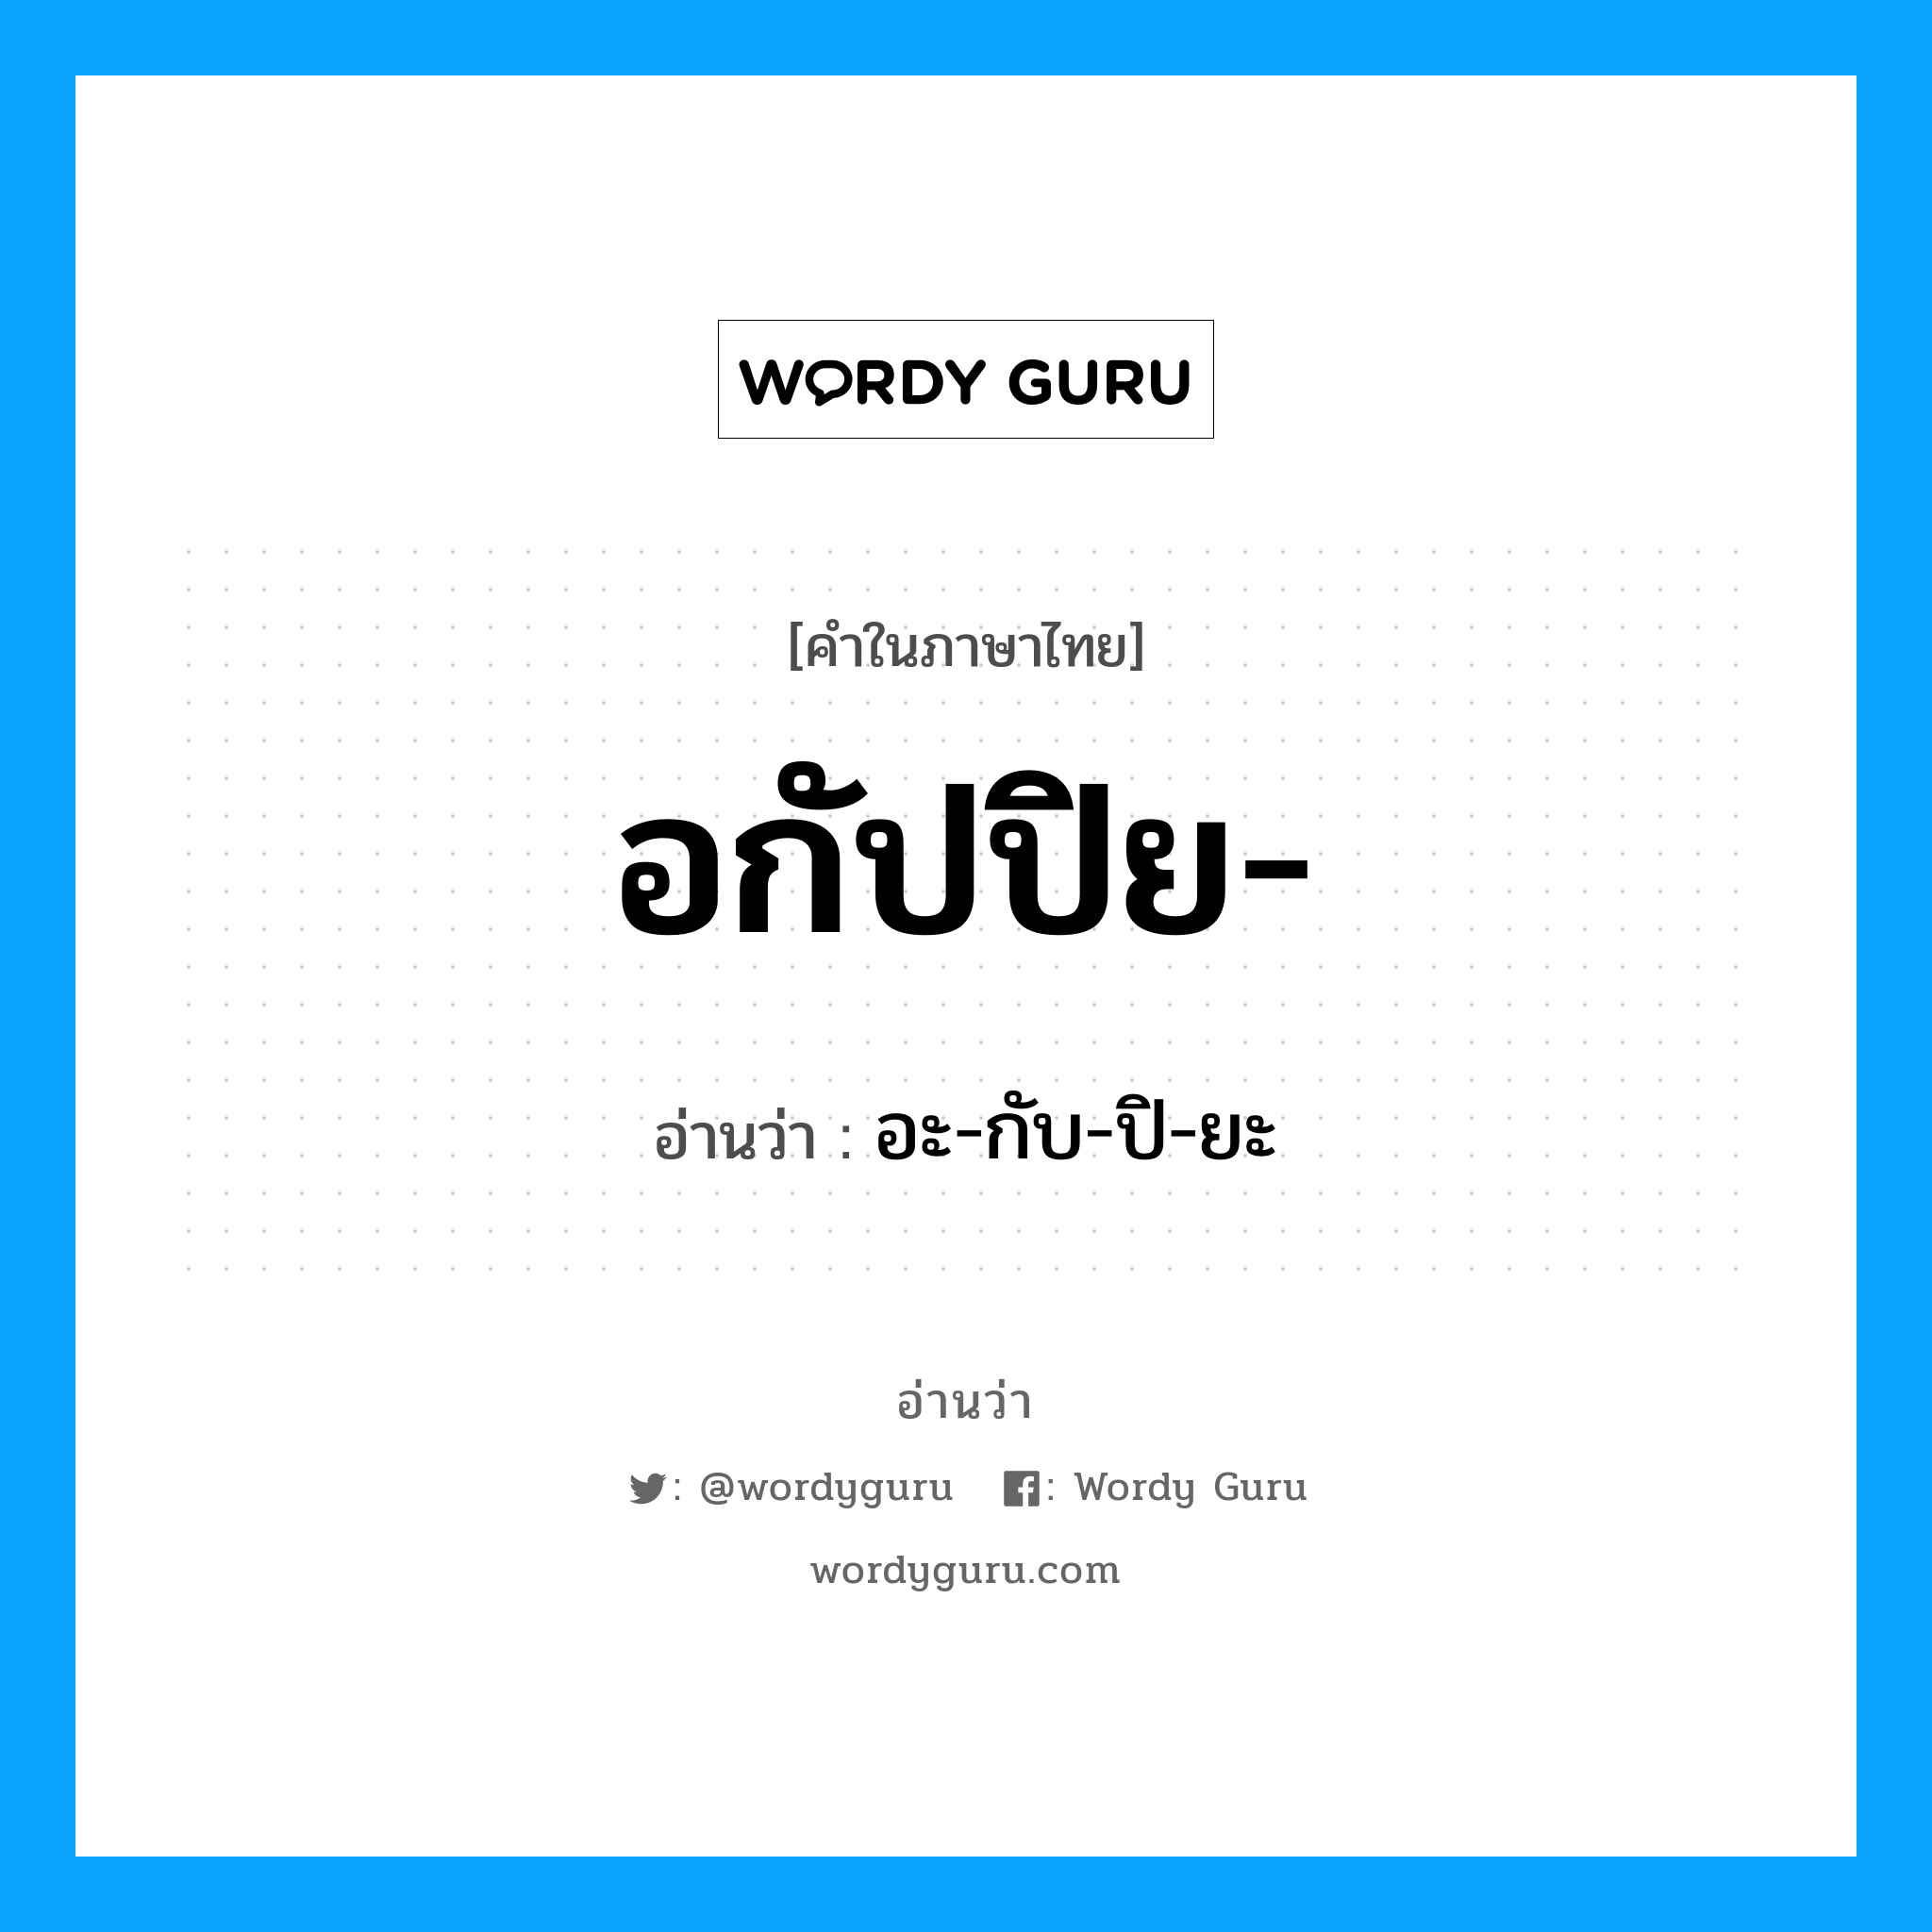 อะ-กับ-ปิ-ยะ เป็นคำอ่านของคำไหน?, คำในภาษาไทย อะ-กับ-ปิ-ยะ อ่านว่า อกัปปิย-